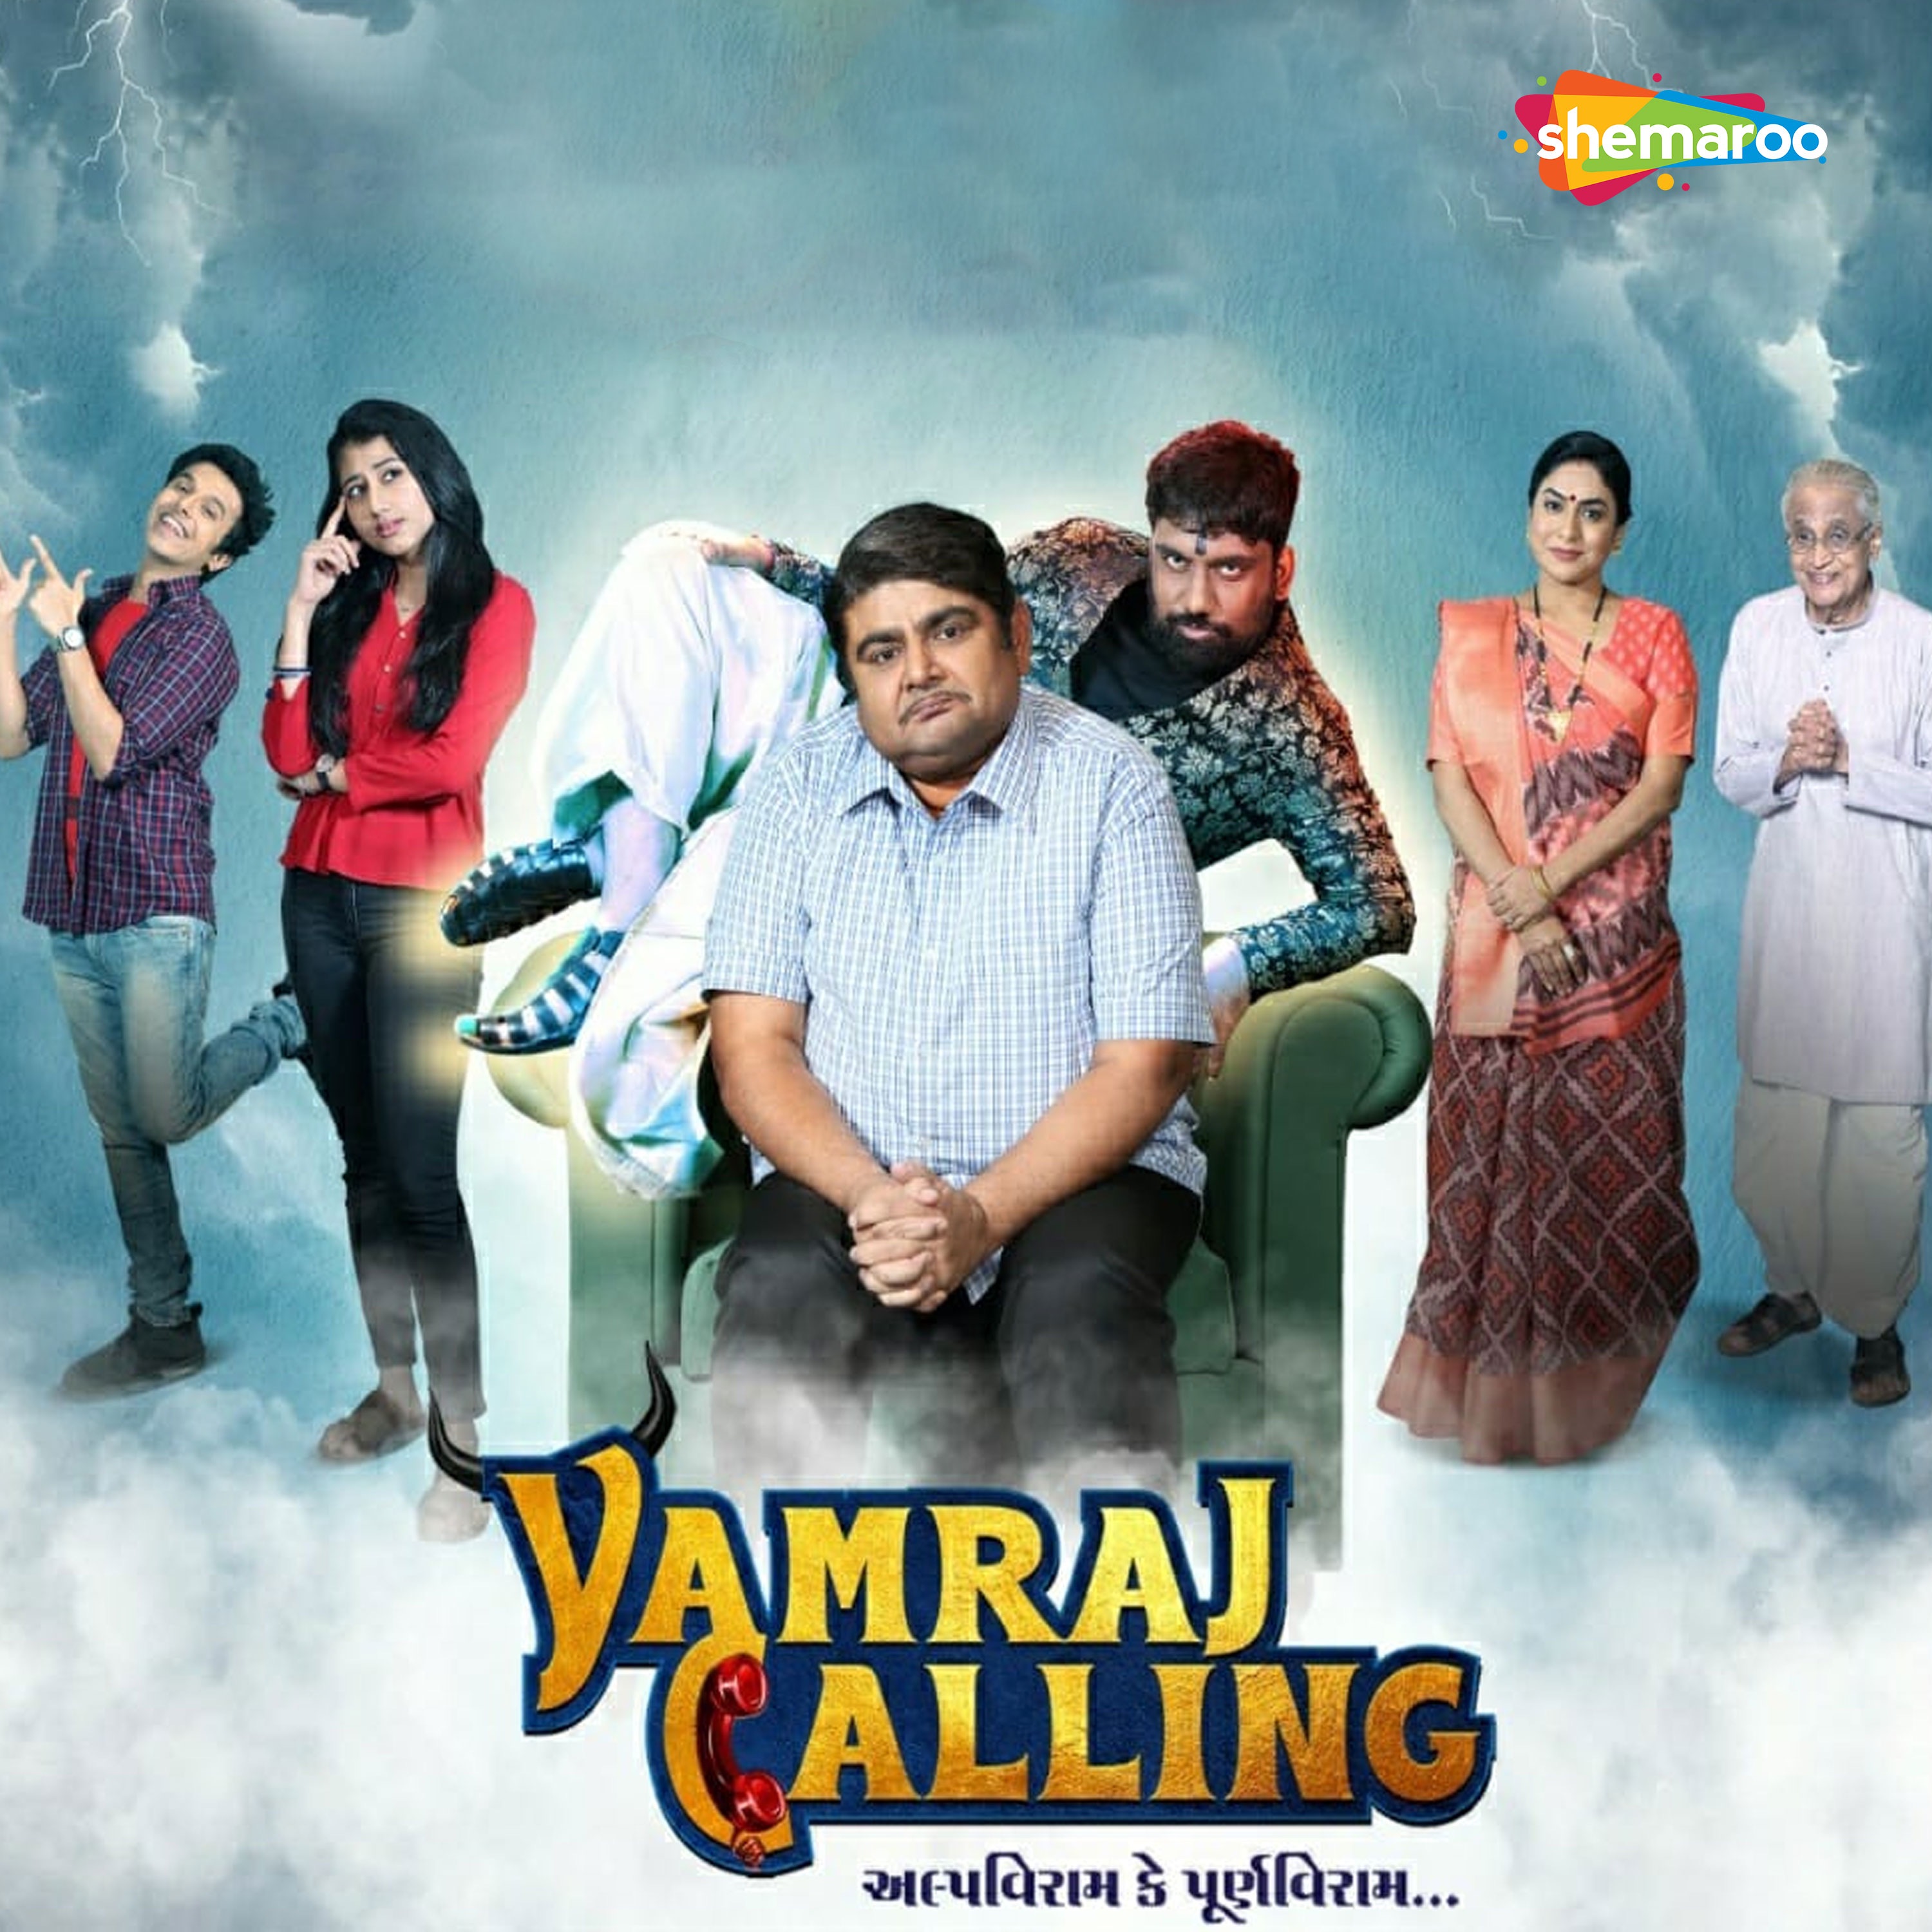 Yamraj calling all episodes free